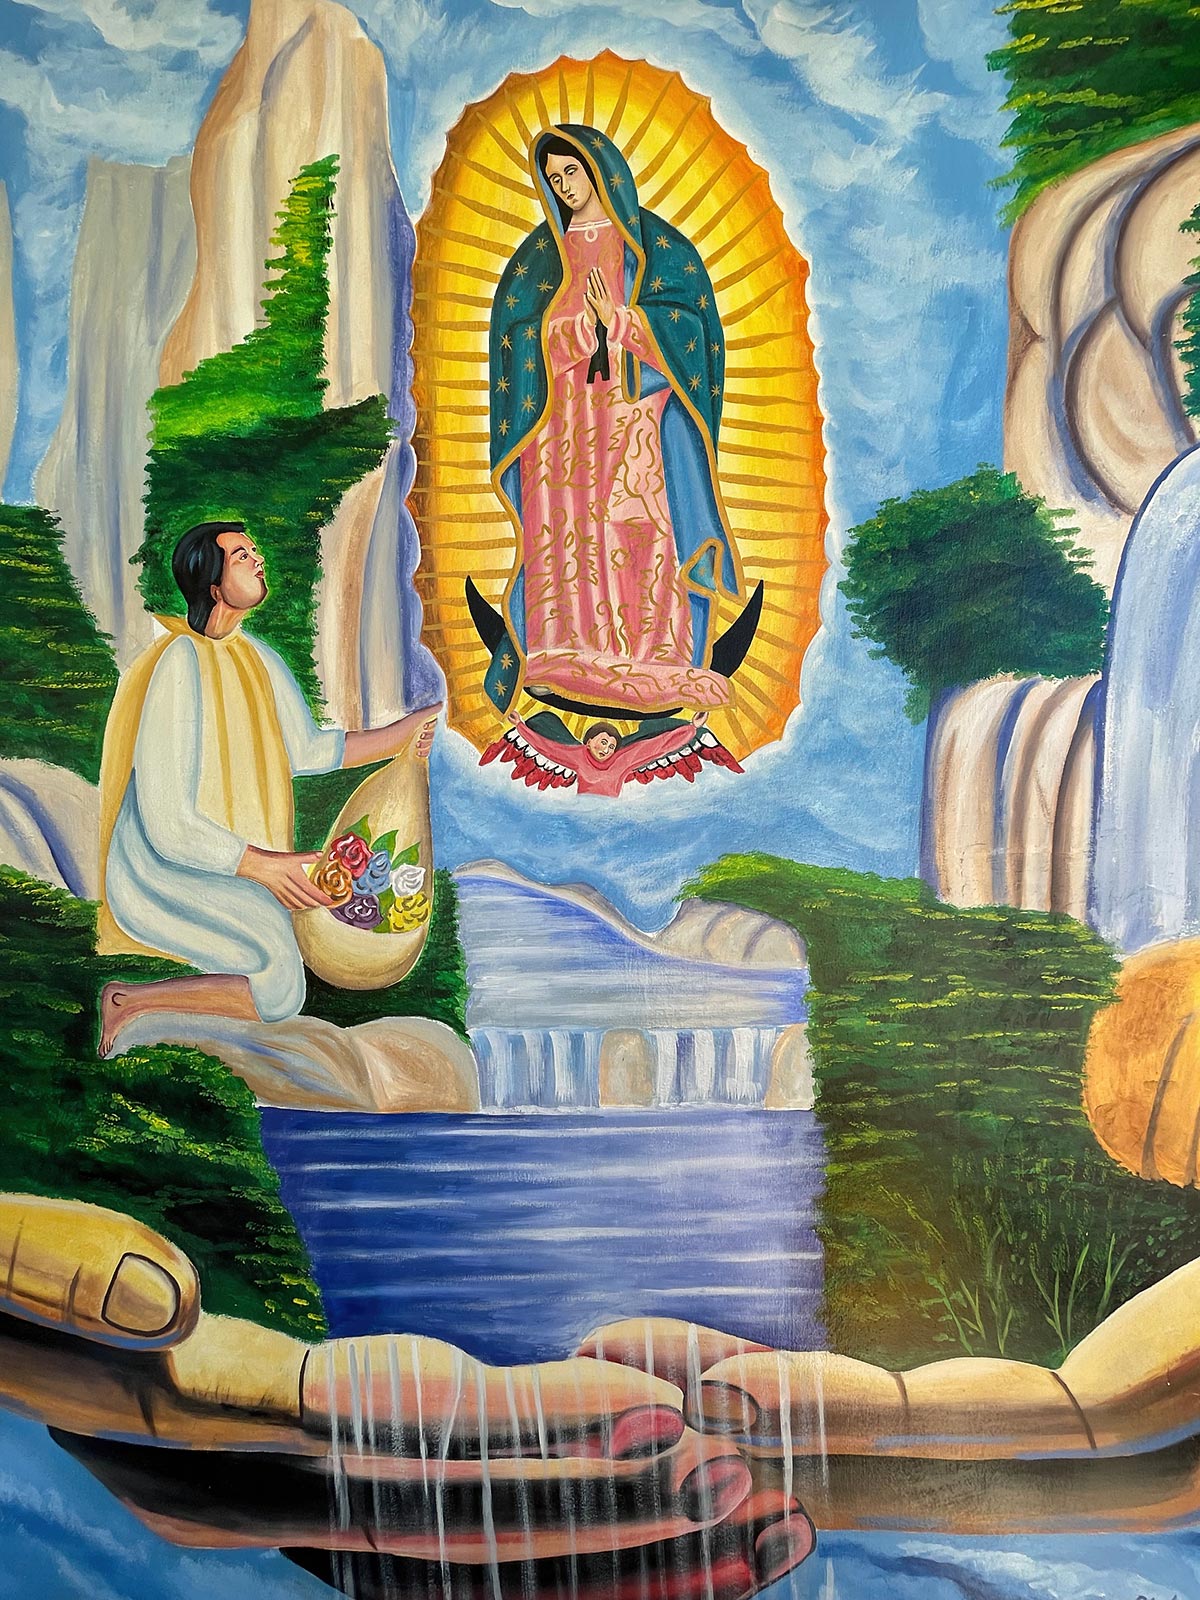 Pintura de Juan Diego e aparição de Maria, Igreja de Guadalupe, San Cristobal